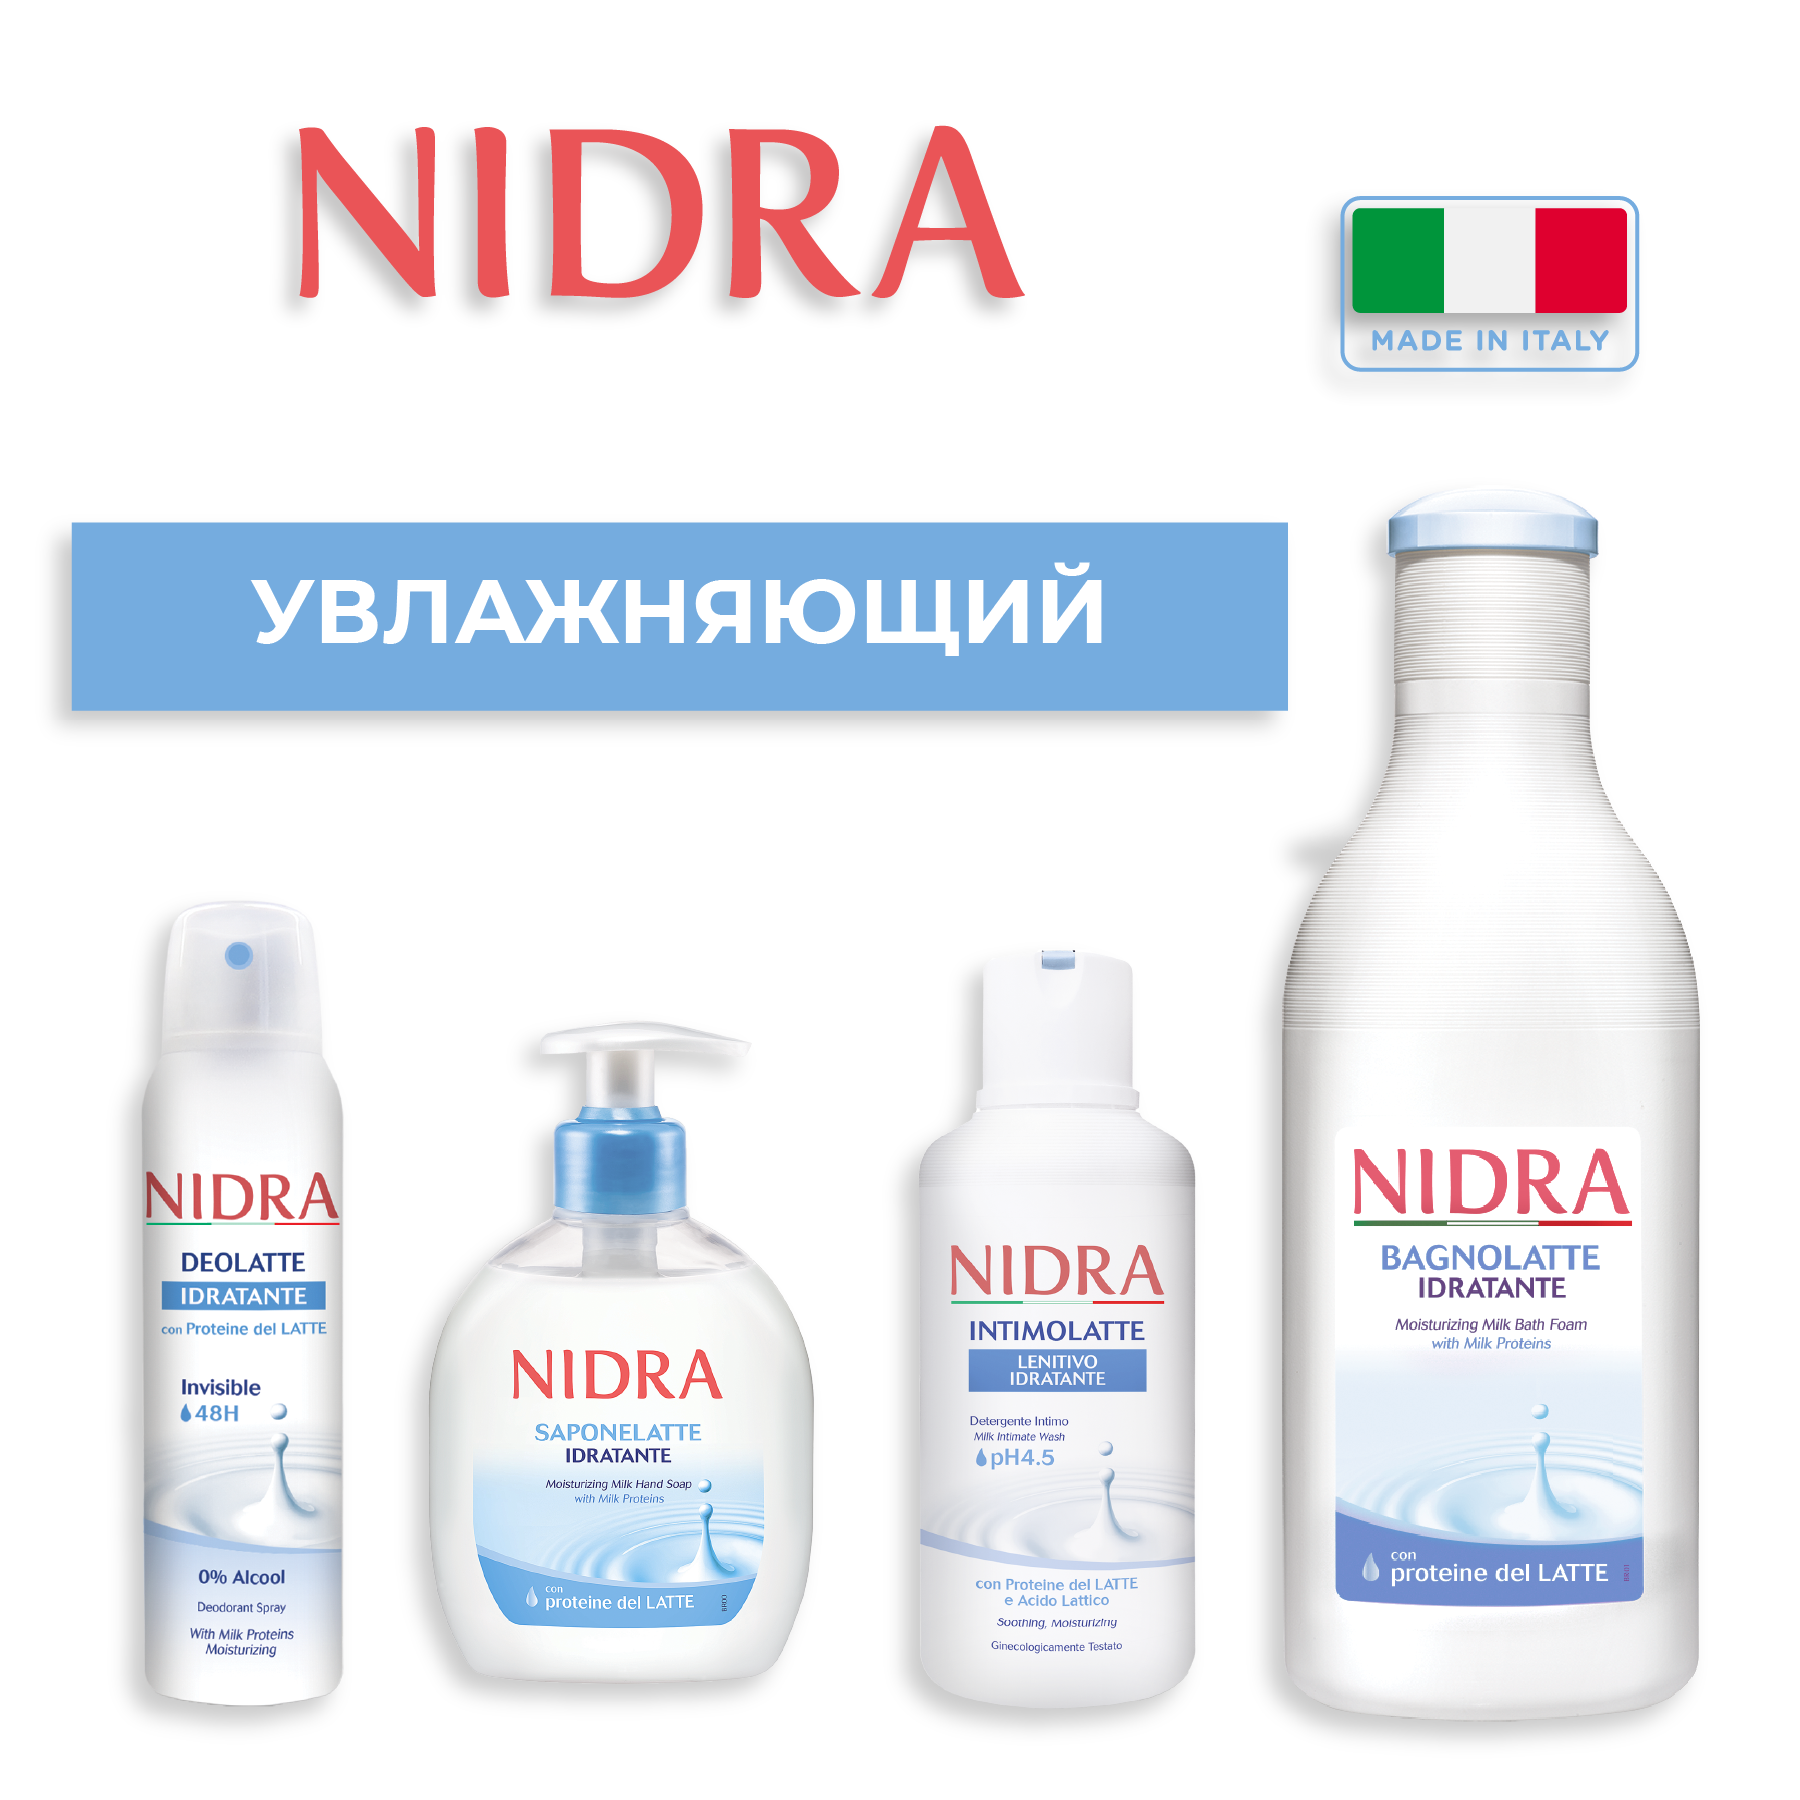 Пена-молочко для ванны Nidra увлажняющая с молочными протеинами 750 мл